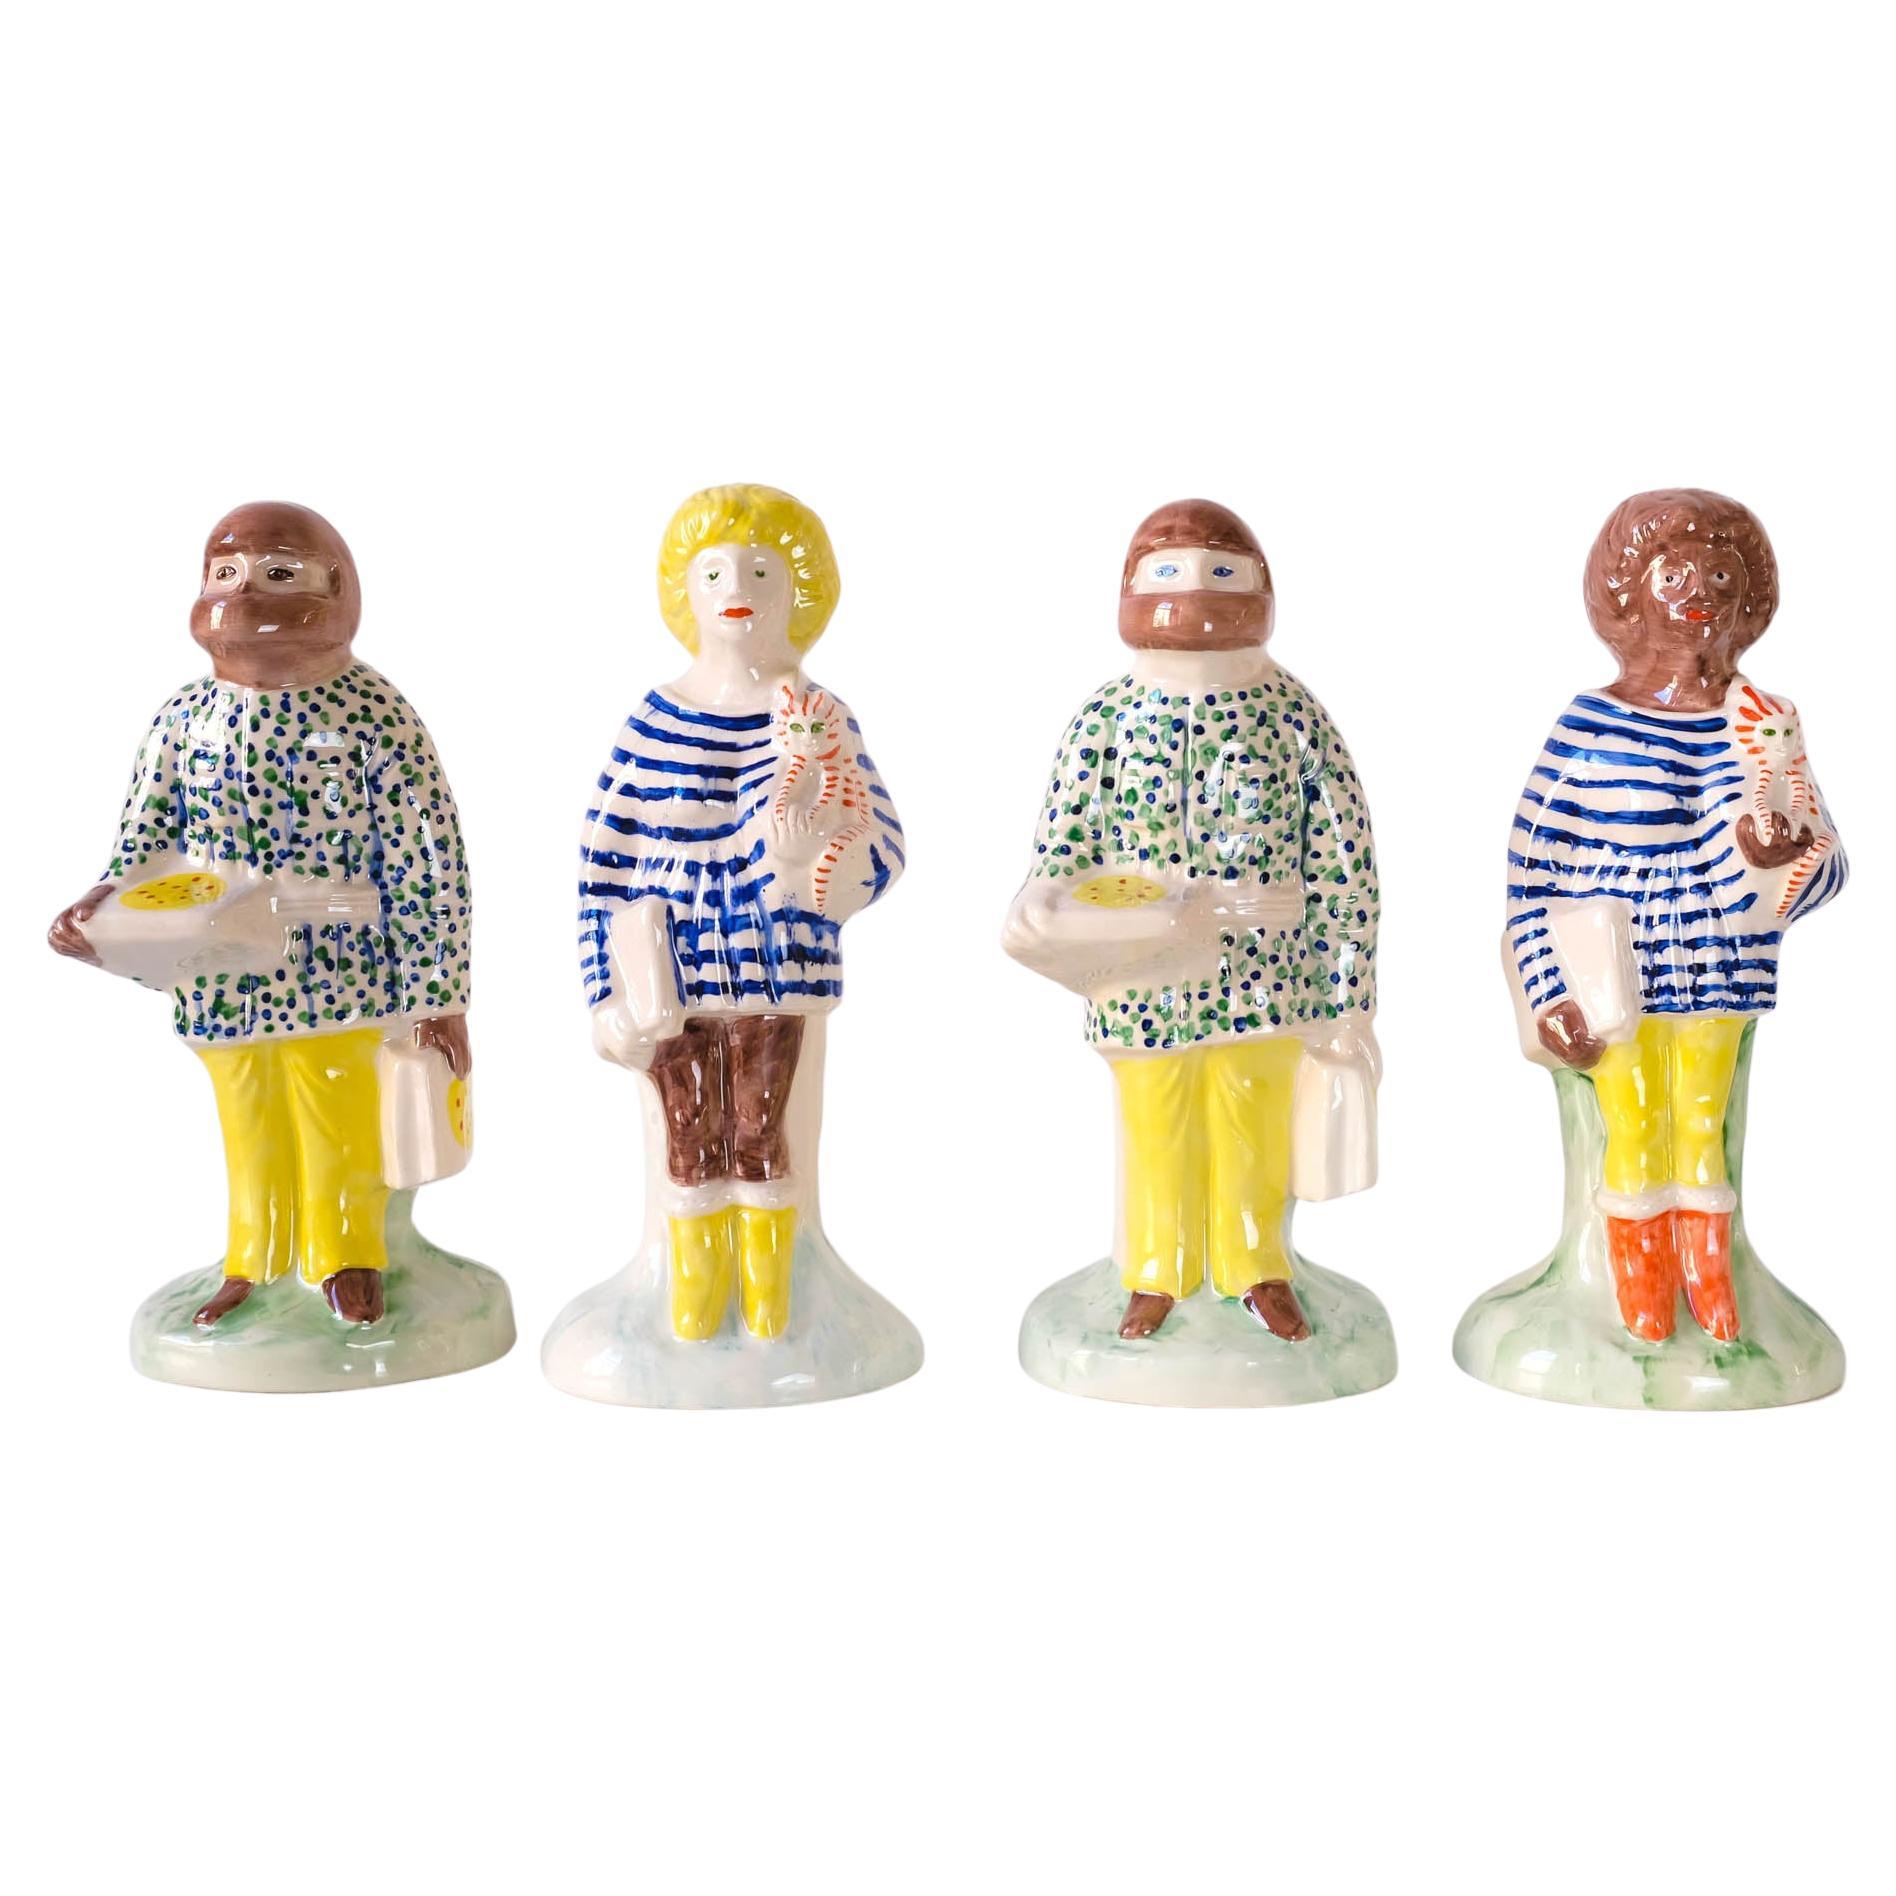 Ensemble complet de figurines de Staffordshire « Home Worker & Key Worker » (ou travailleur à domicile) de Grayson Perry